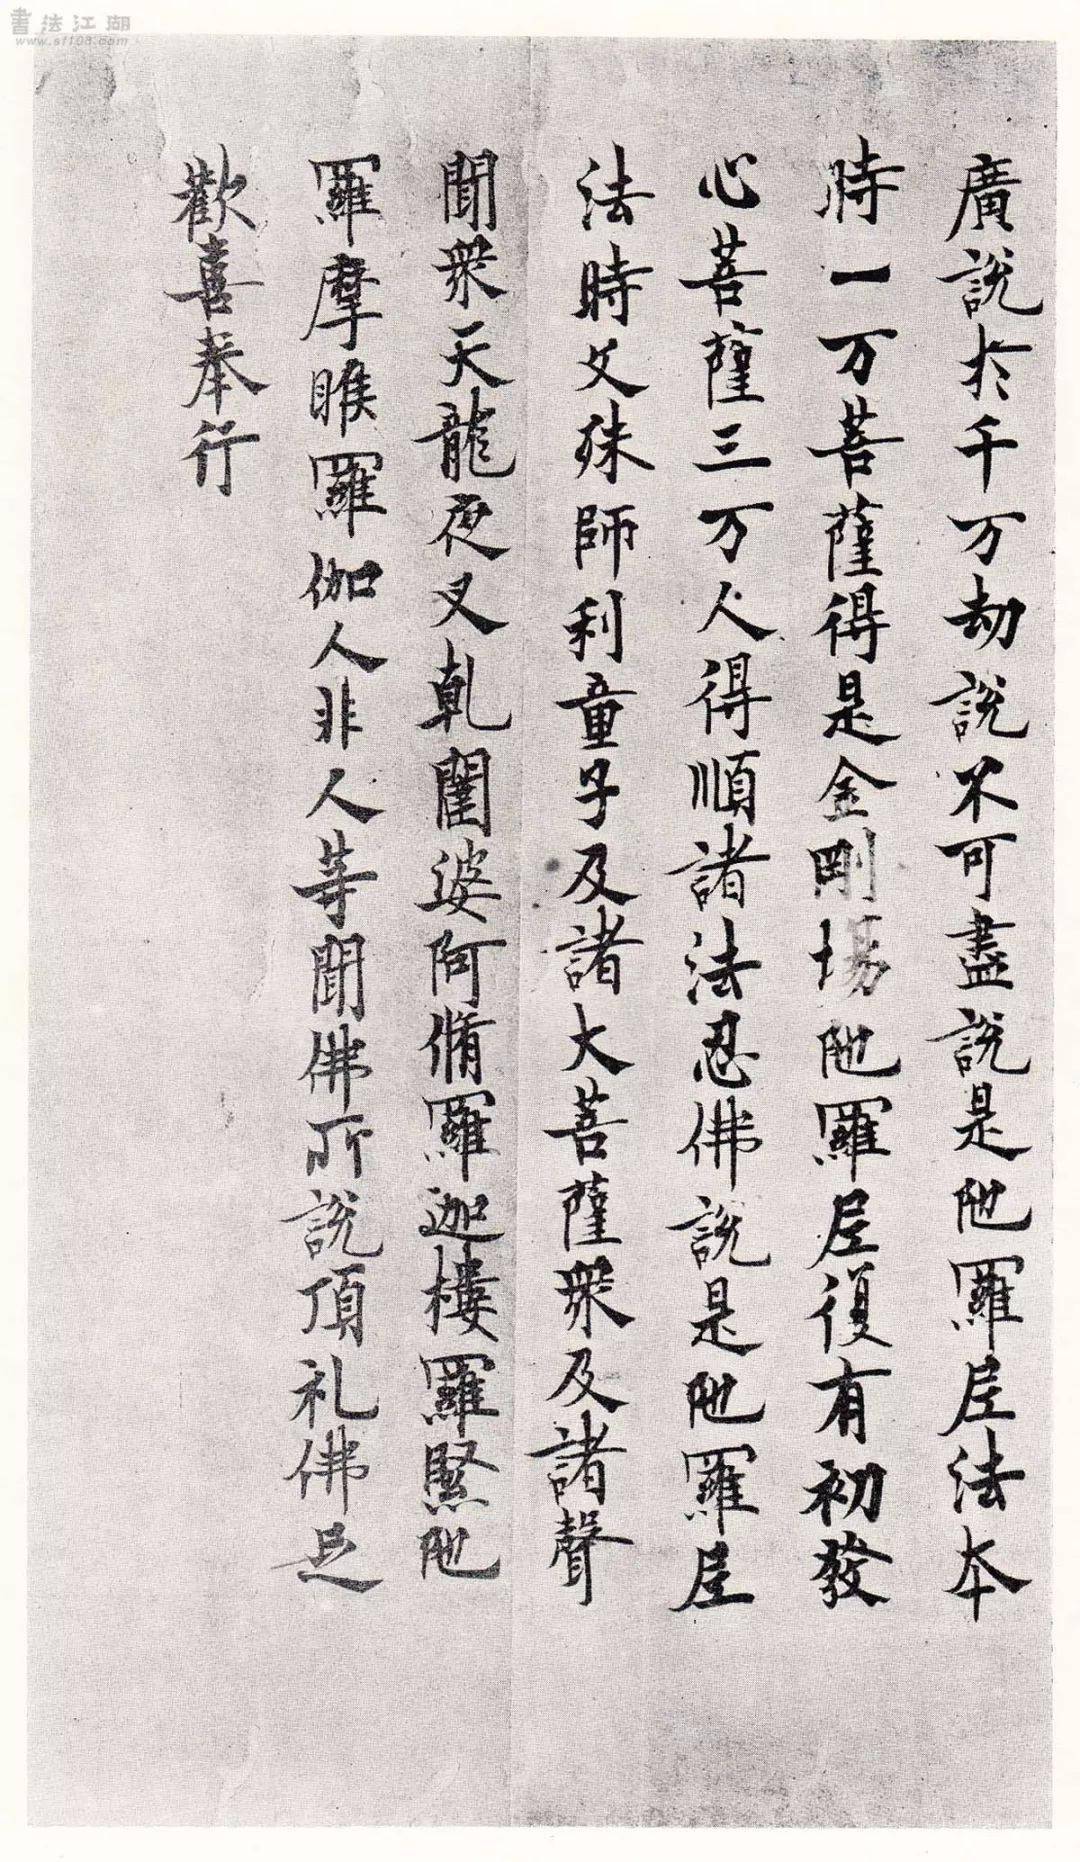 其中有二件名品,日本天武天皇十四年(686)的《金刚场陀罗尼经》和《长